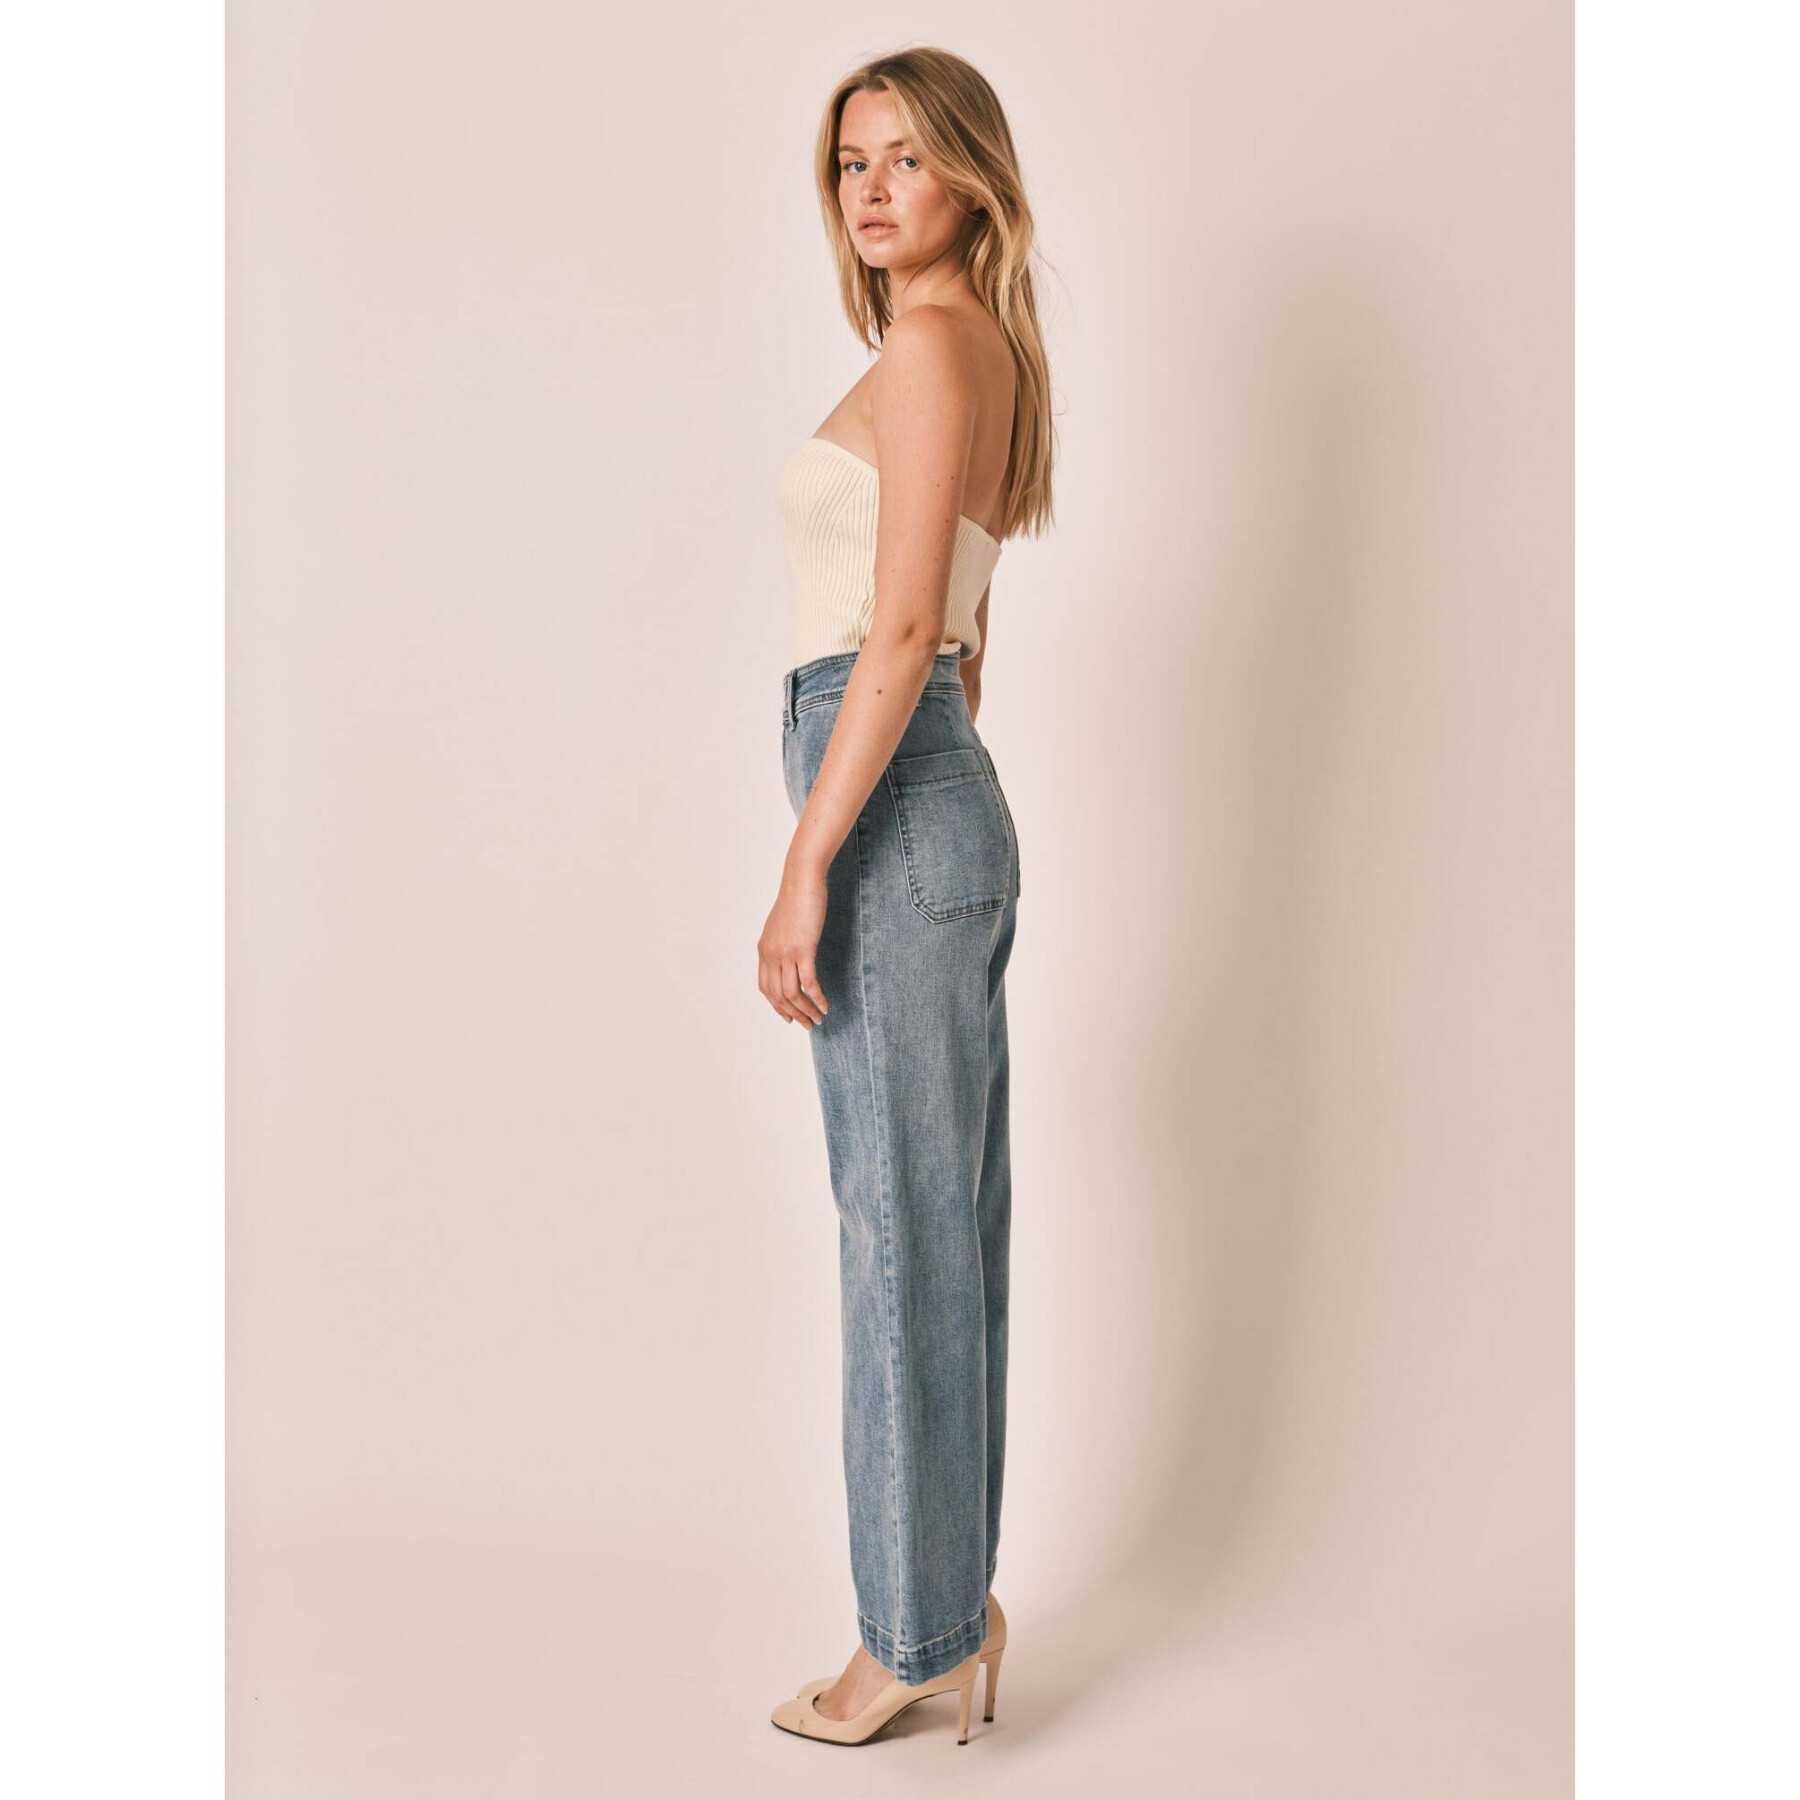 Jeans évasé bleu taille haute en coton stretch femme F.A.M. Paris Fauve